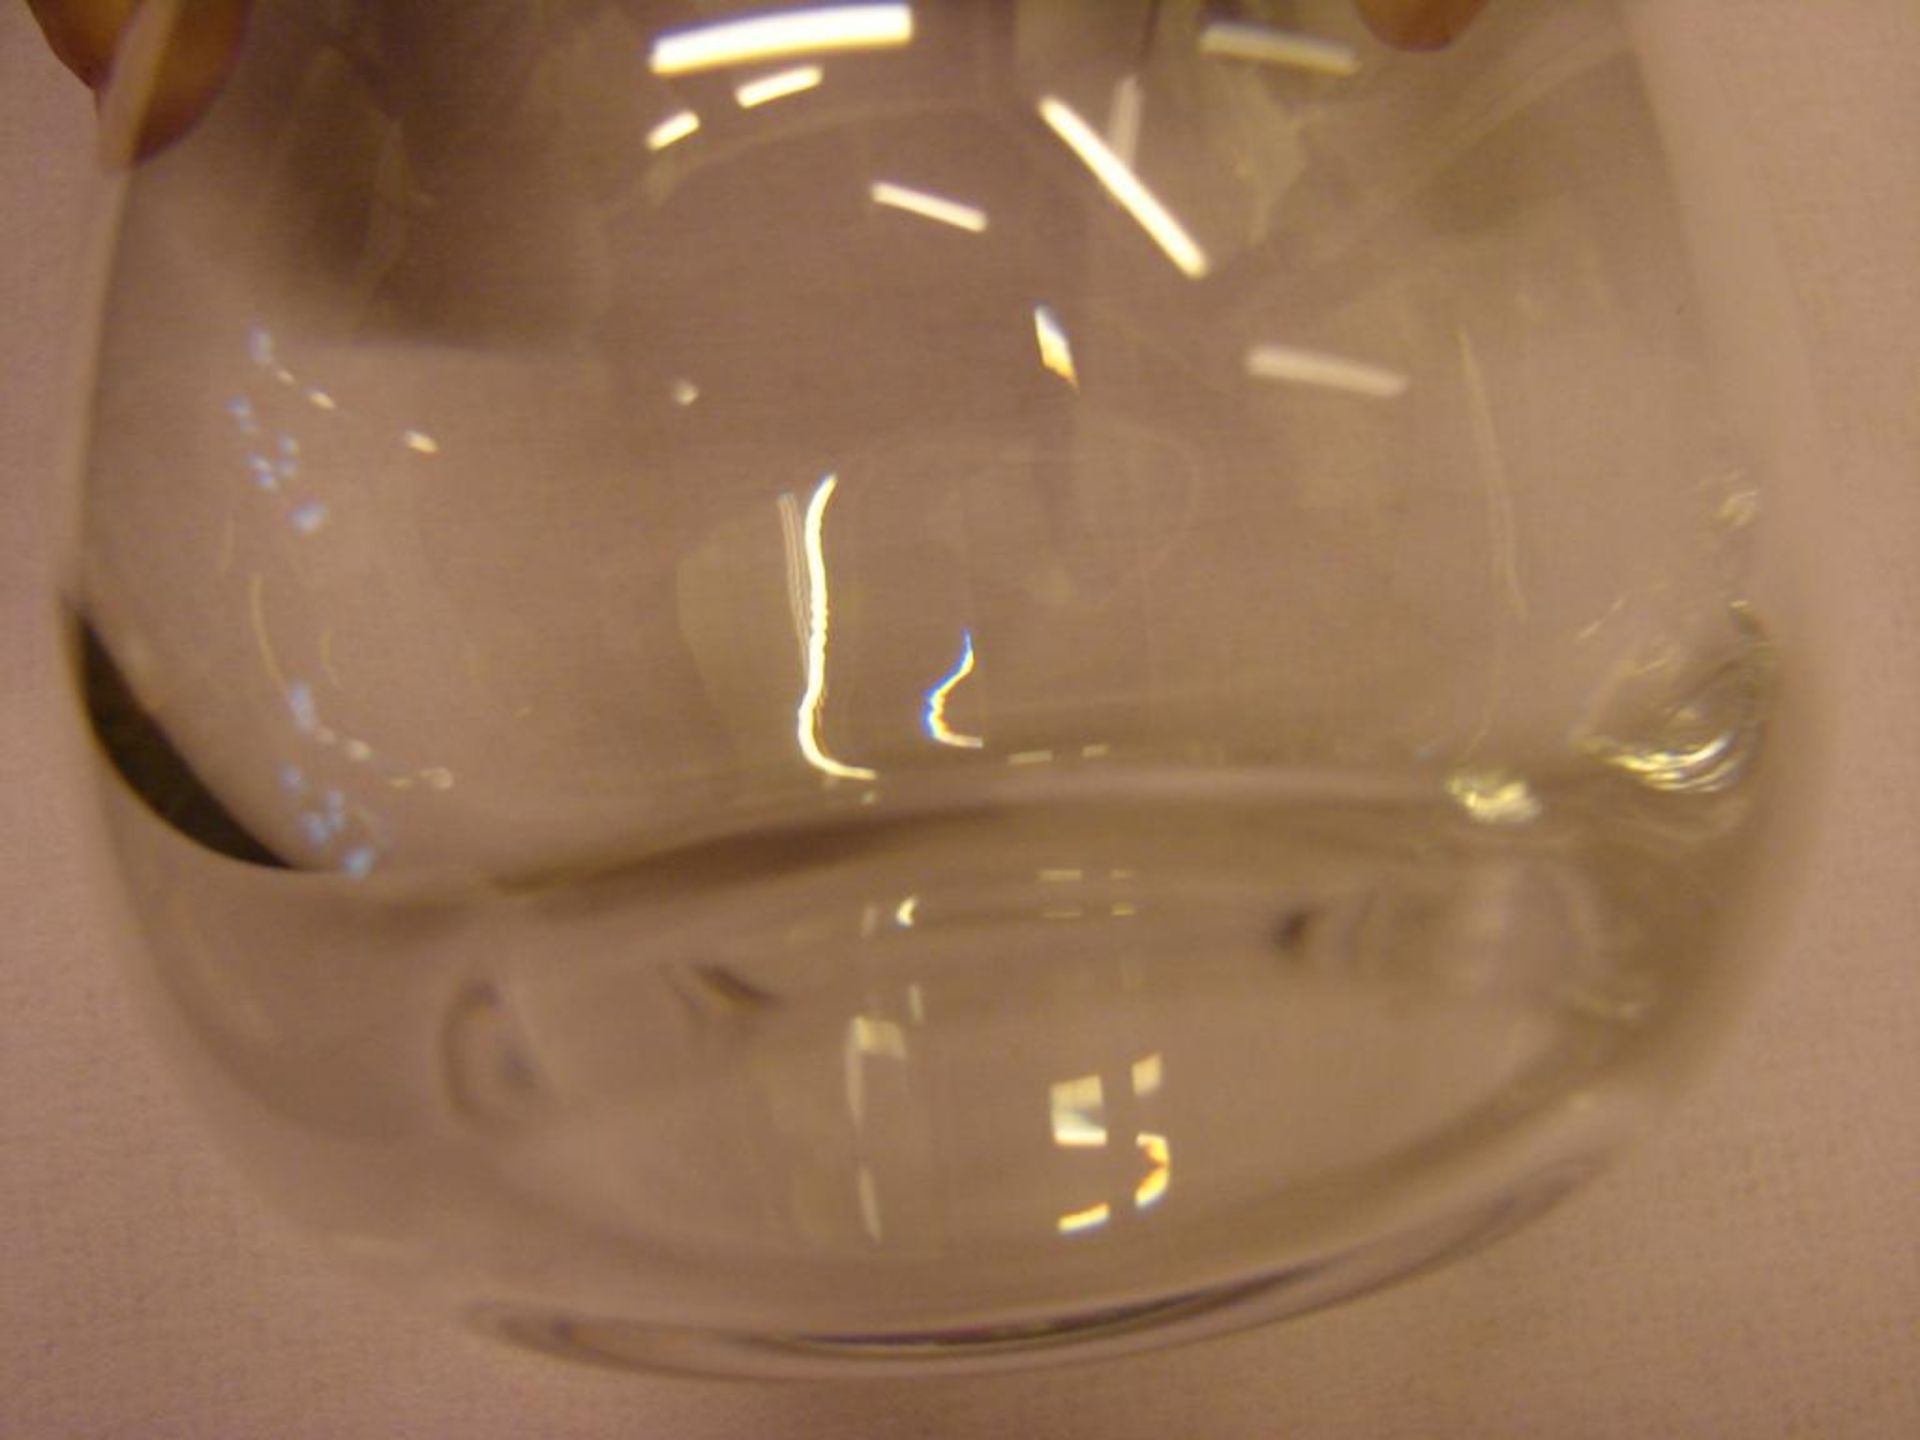 12 Wassergläser, Daum France, farbloses Kristallglas, am Stand bez.: Daum France, ein Glas mit Chip - Bild 2 aus 2